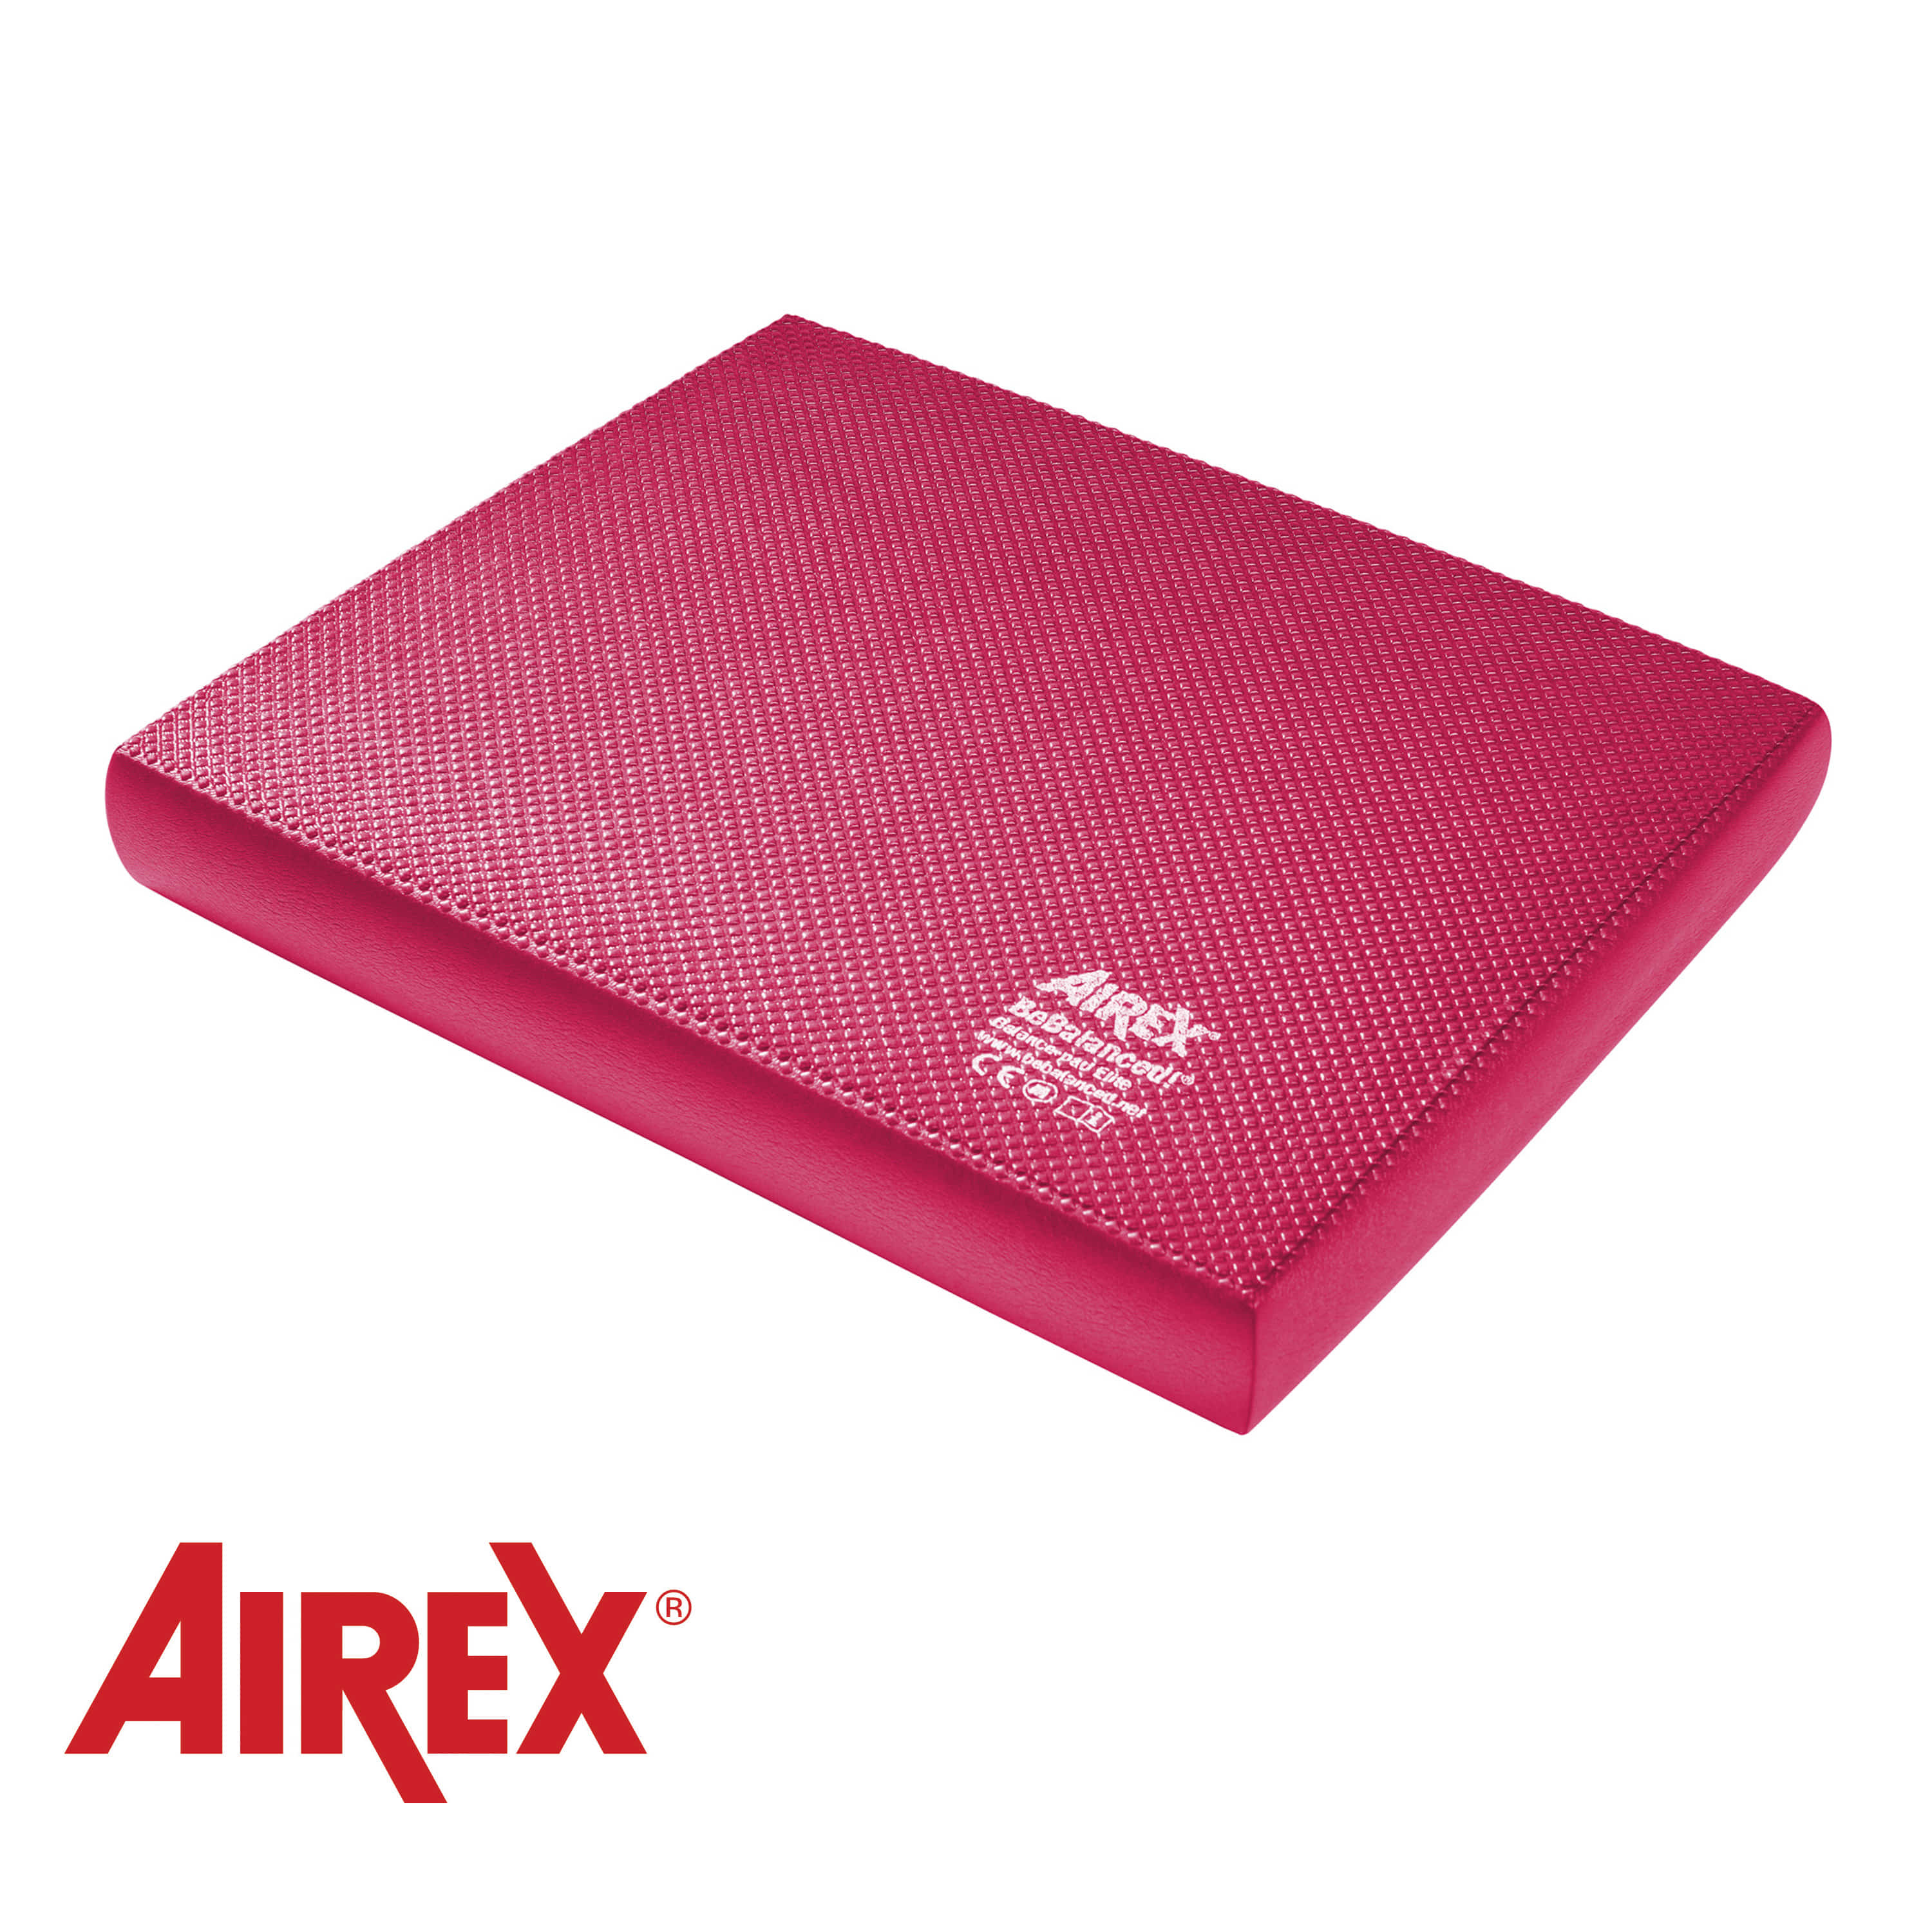 Airex®  Balance Pad Elite Pink